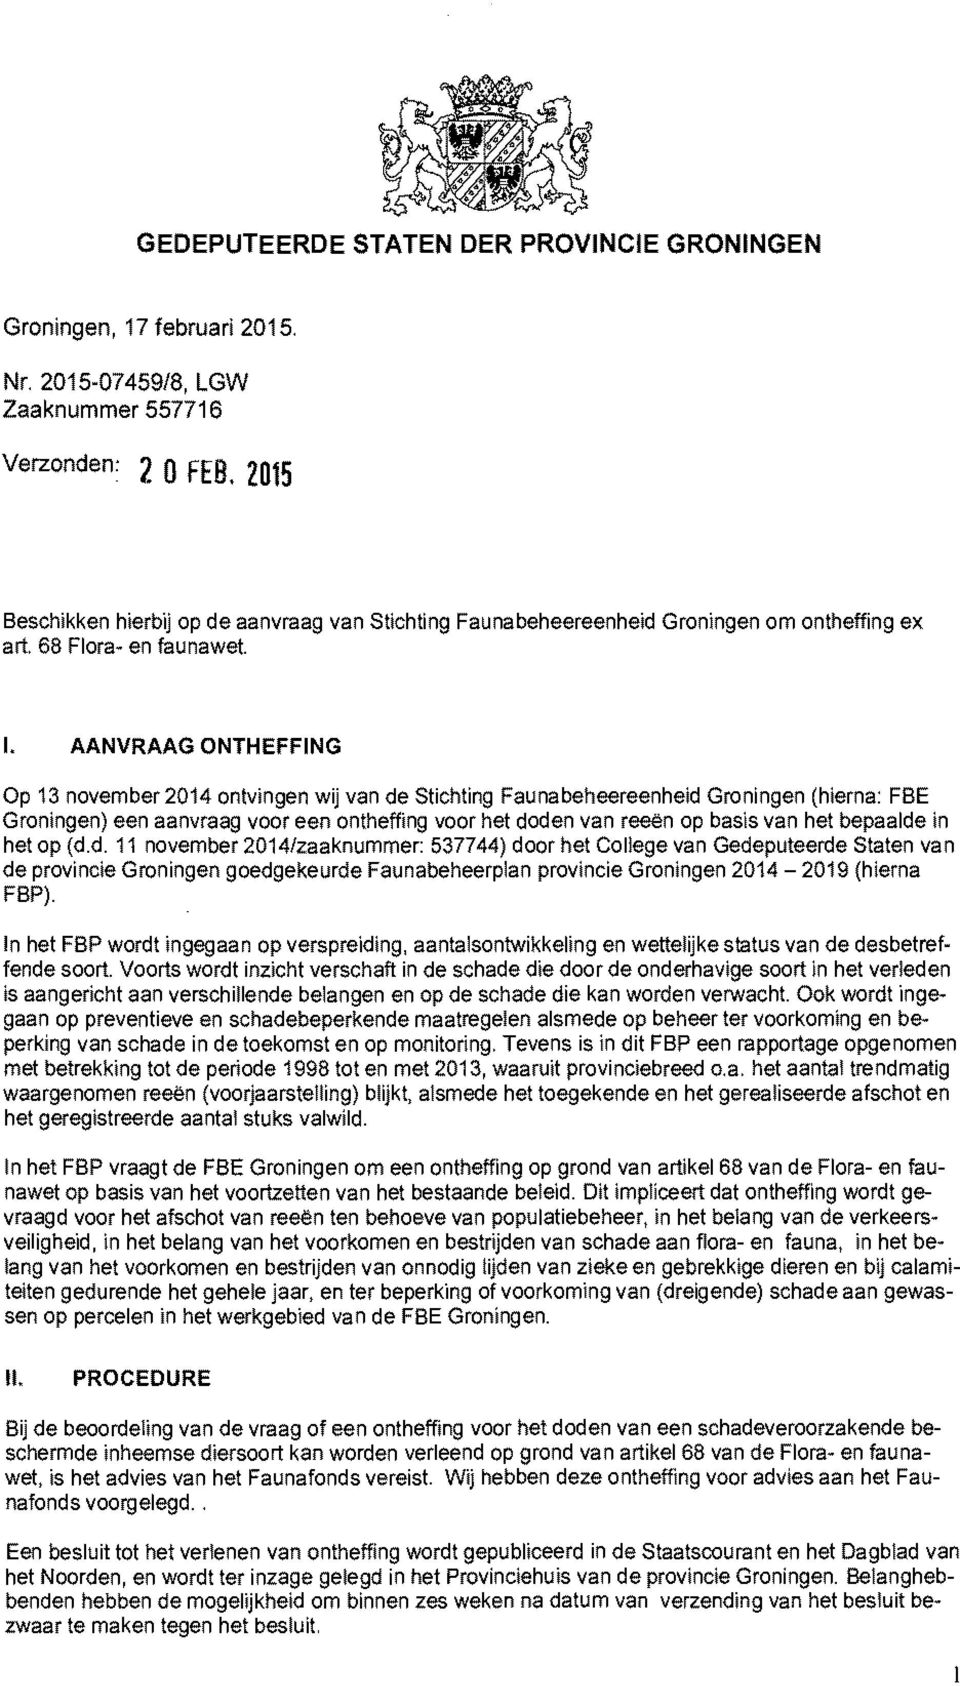 AANVRAAG ONTHEFFING Op 13 november 2014 ontvingen wij van de Stichting Faunabeheereenheid Groningen (hierna: FBE Groningen) een aanvraag voor een ontheffing voor het doden van reeën op basis van het